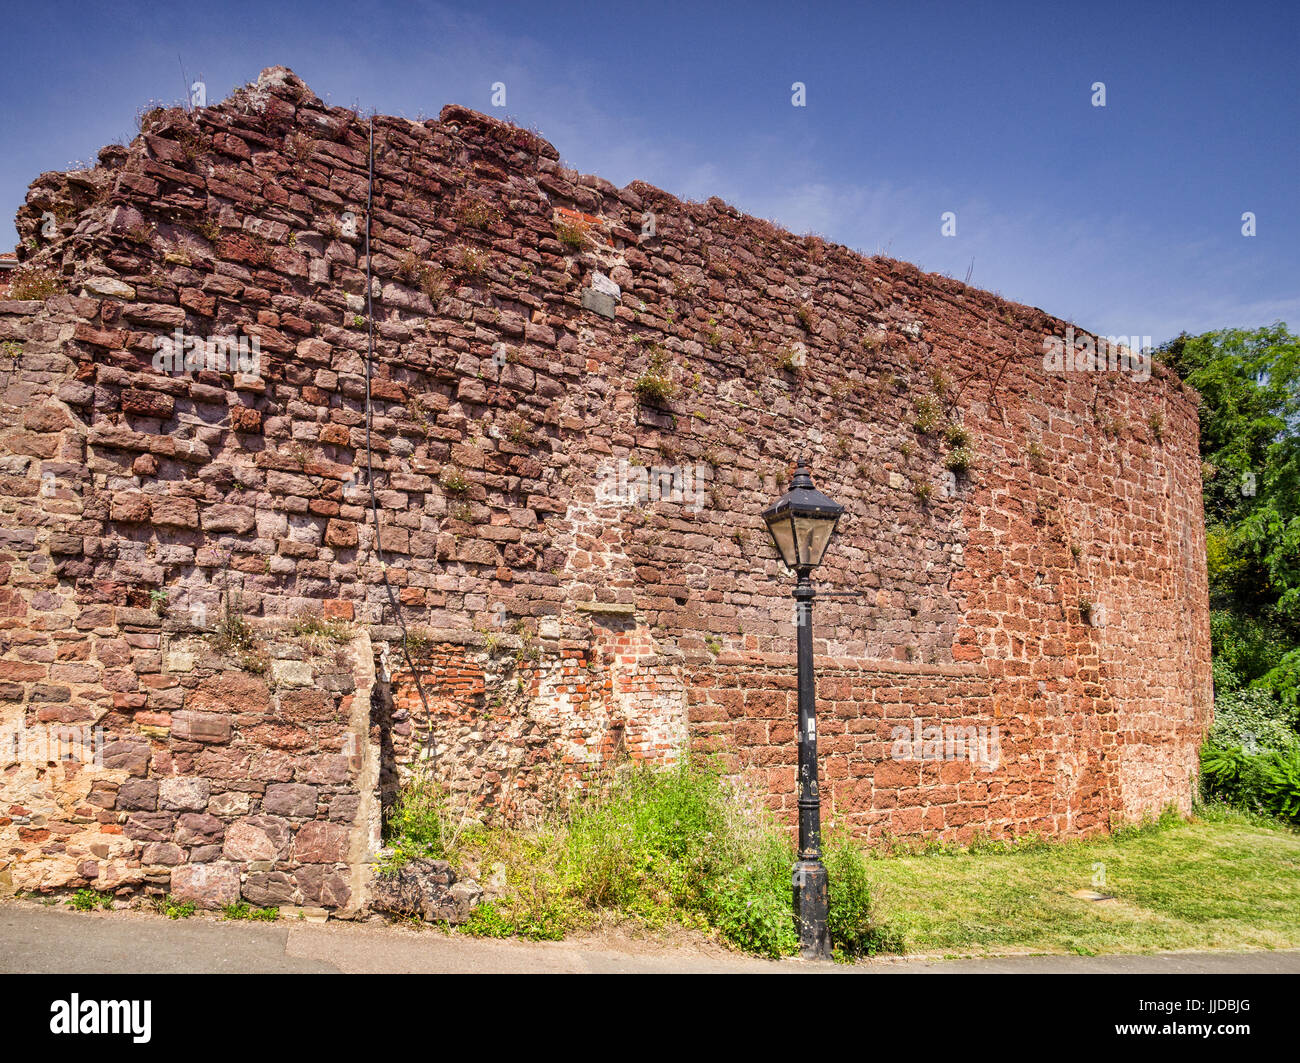 Ein Teil der alten Stadtmauer von Exeter City, in der Nähe von Exeter Kais. Etwa 70 % der Mauer überlebt, und vieles davon ist fast 2000 Jahre alt. Stockfoto